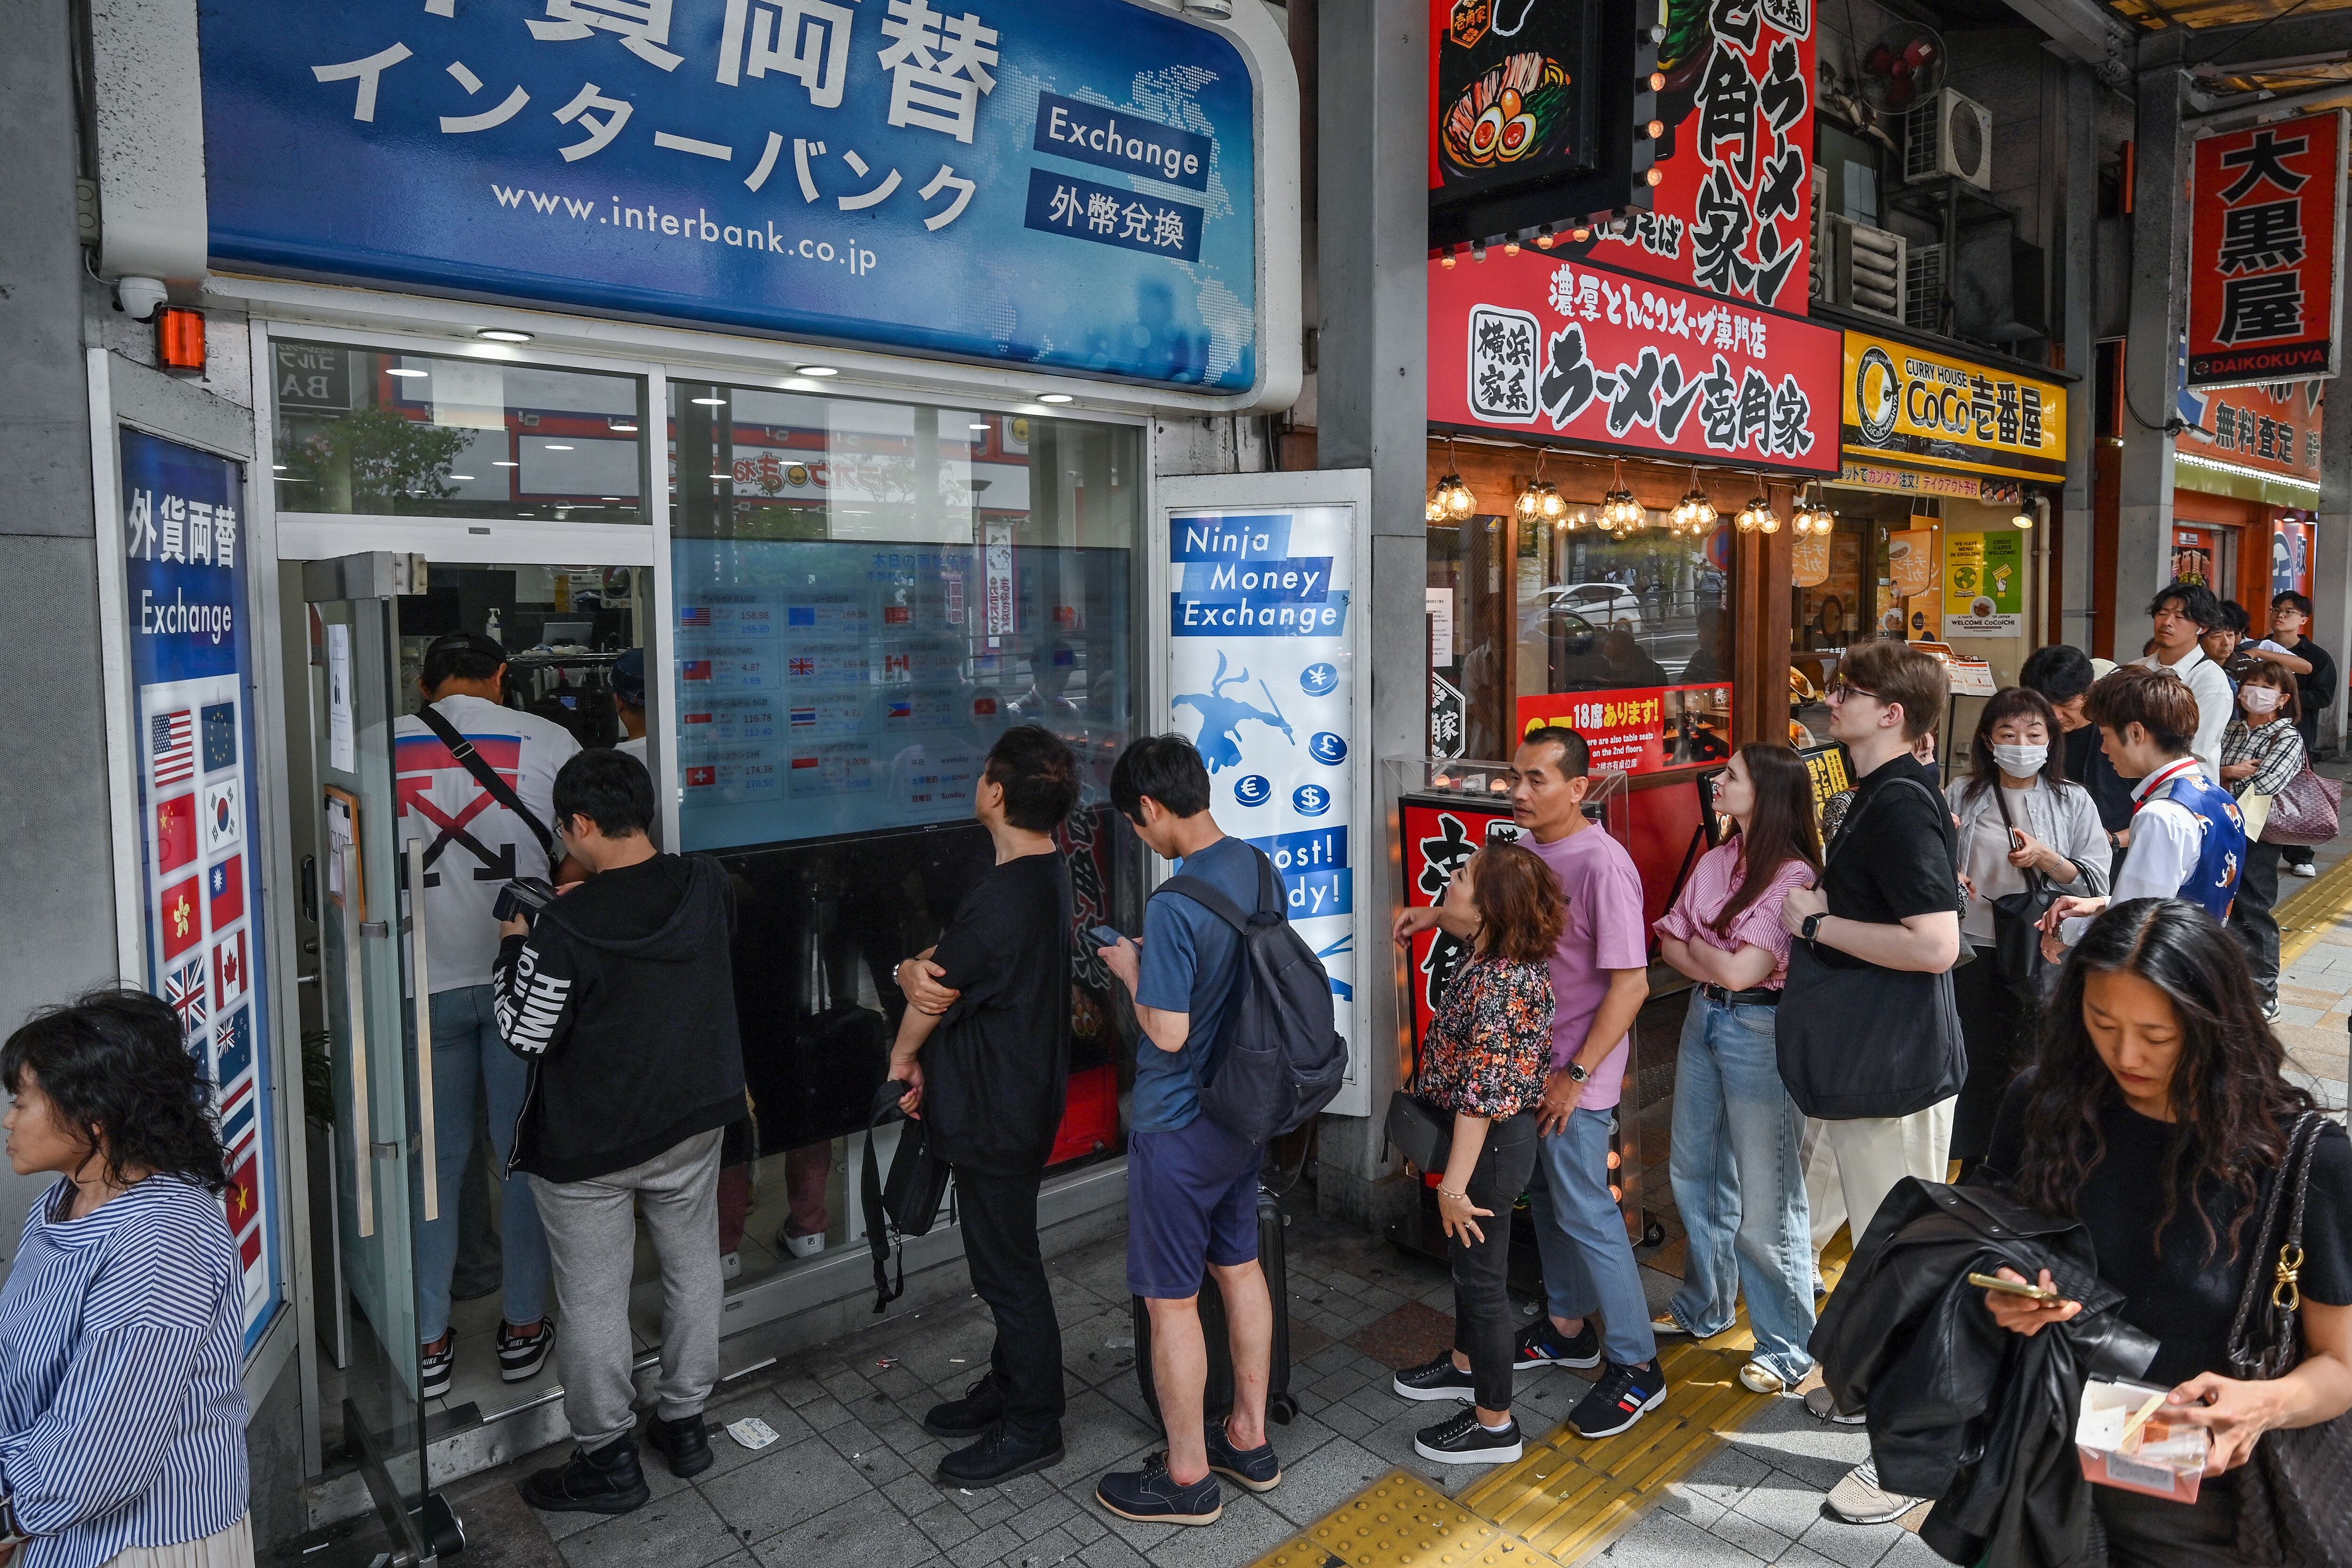 Un grupo de personas hacen fila afuera de una casa de cambio mientras la gente espera para comprar y vender el yen japonés contra moneda extranjera, a lo largo de una calle en el centro de Tokio. Fotografía: